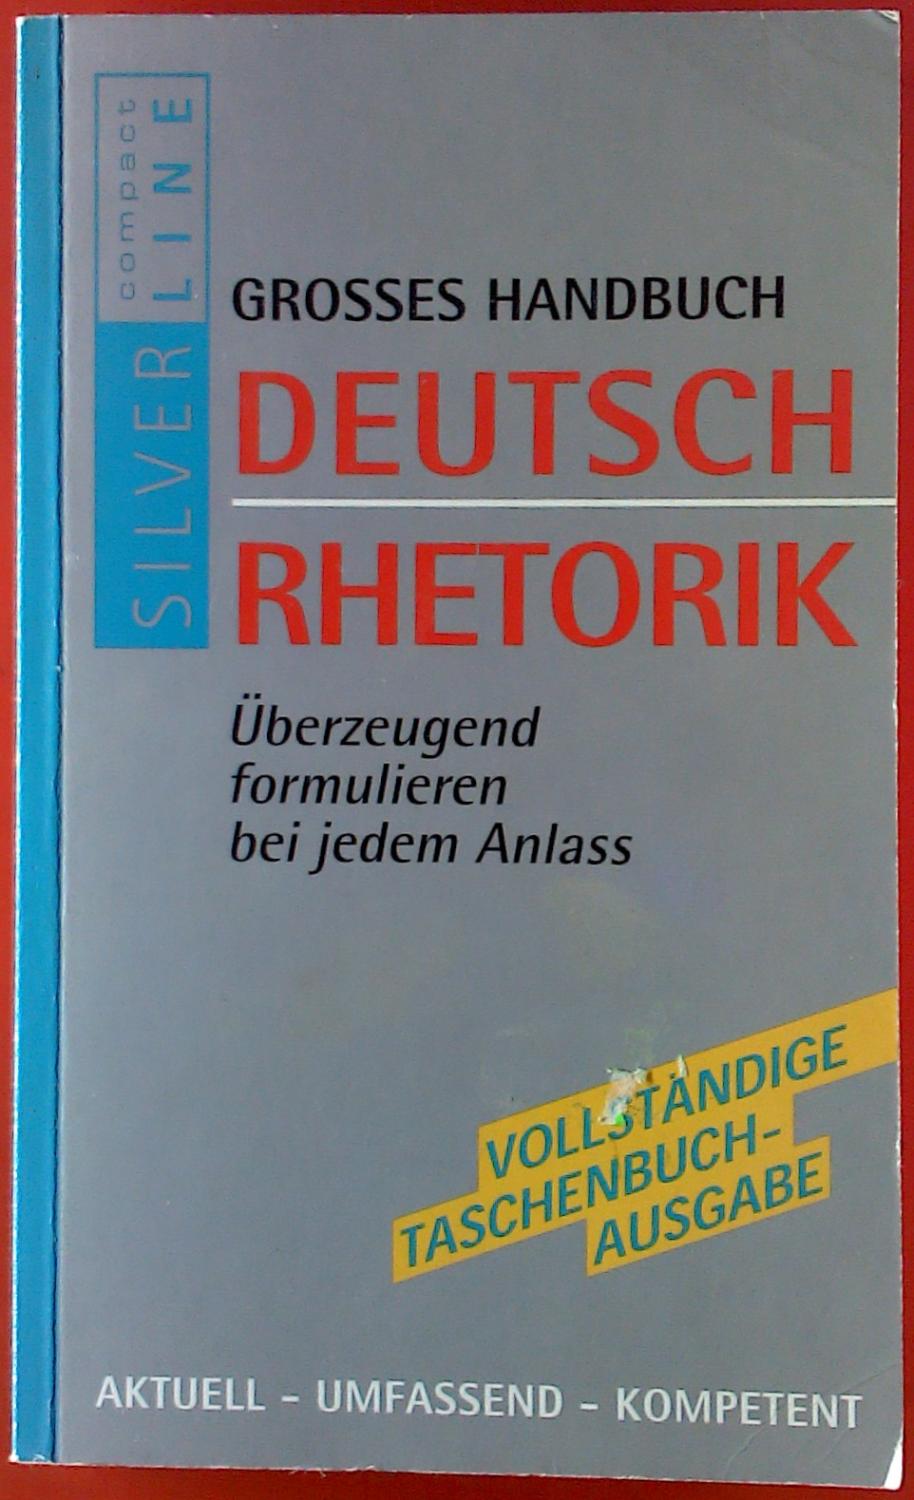 Grosses Handbuch Deutsch Rhetorik. Überzeugend formulieren bei jedem Anlass. Vollständige Taschenbuchausgabe. - Autorenkollektiv